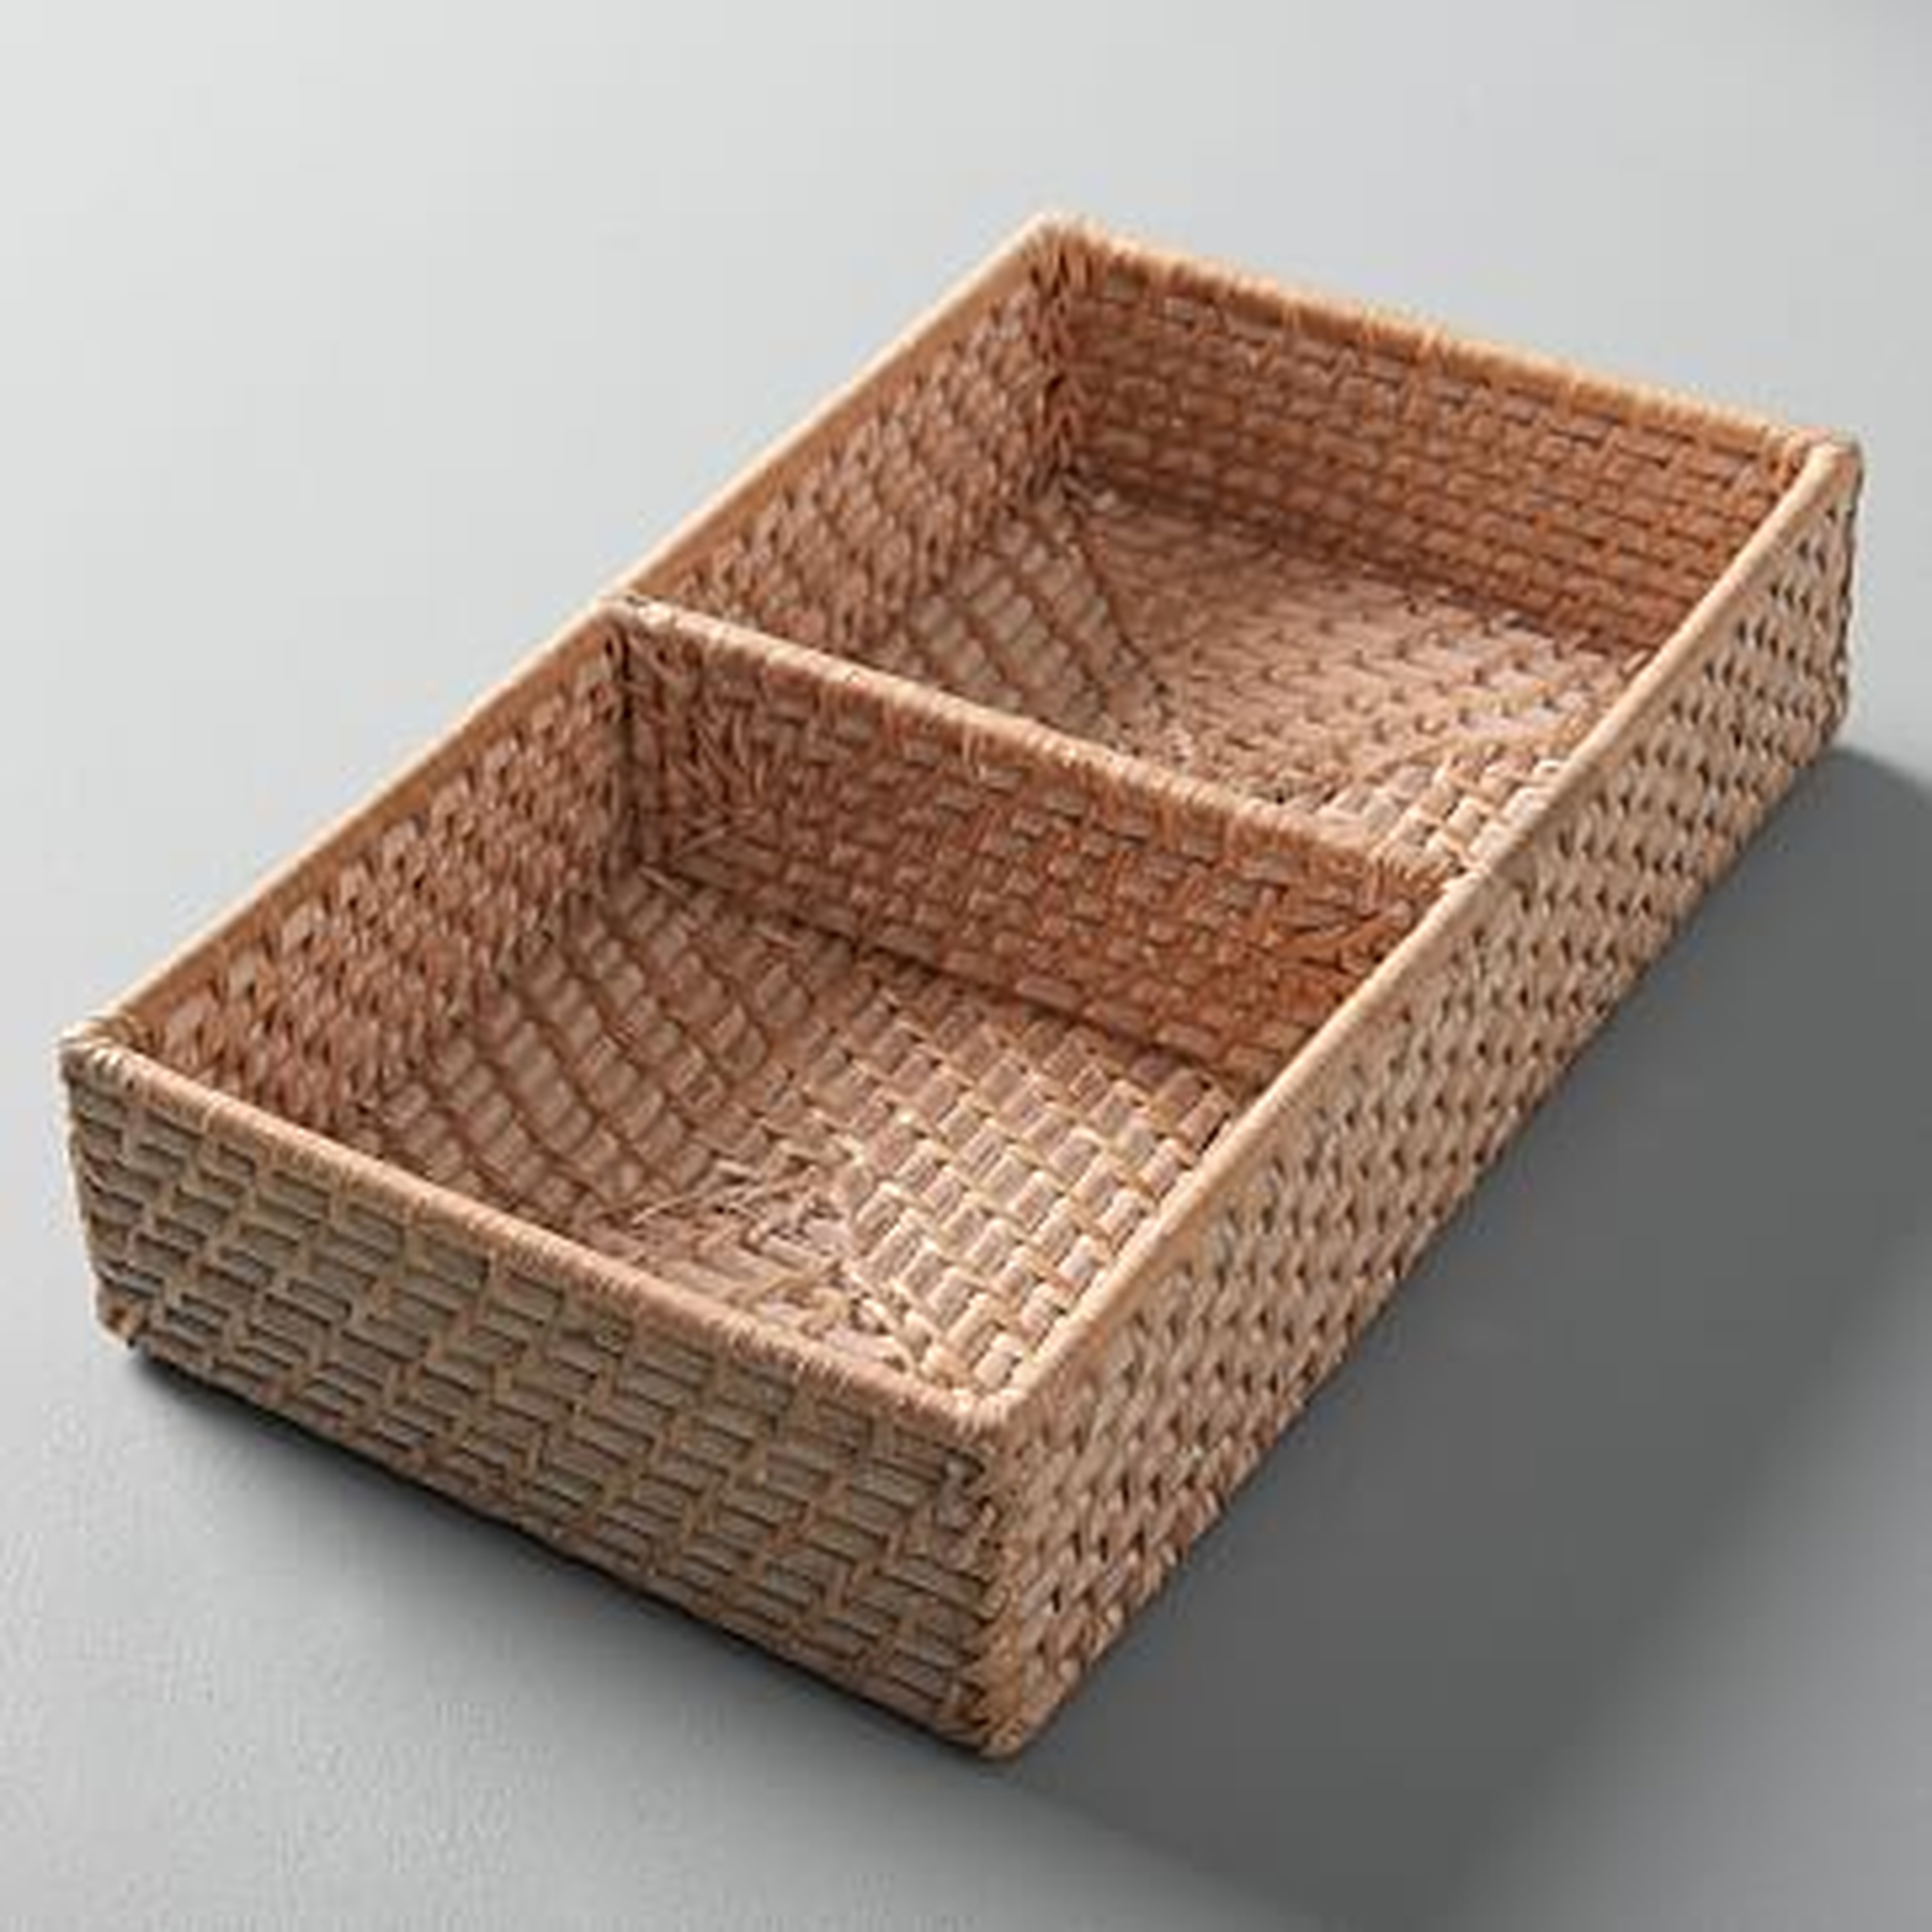 Modern Weave Basket w/ Divider, Whitewashed - West Elm